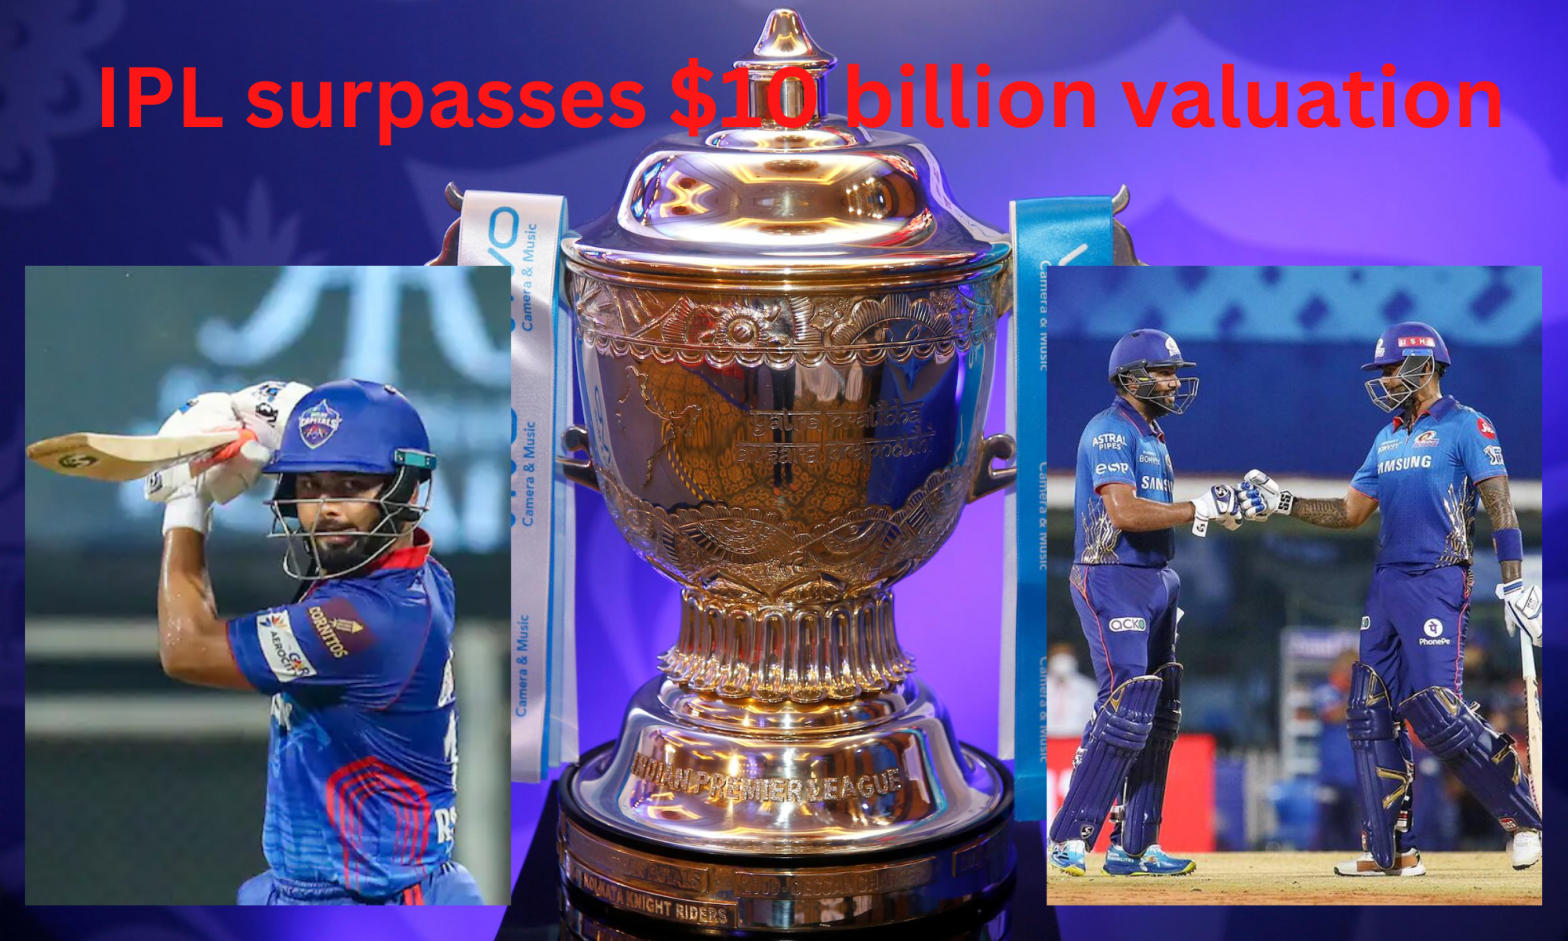 IPL surpasses $10 billion valuation